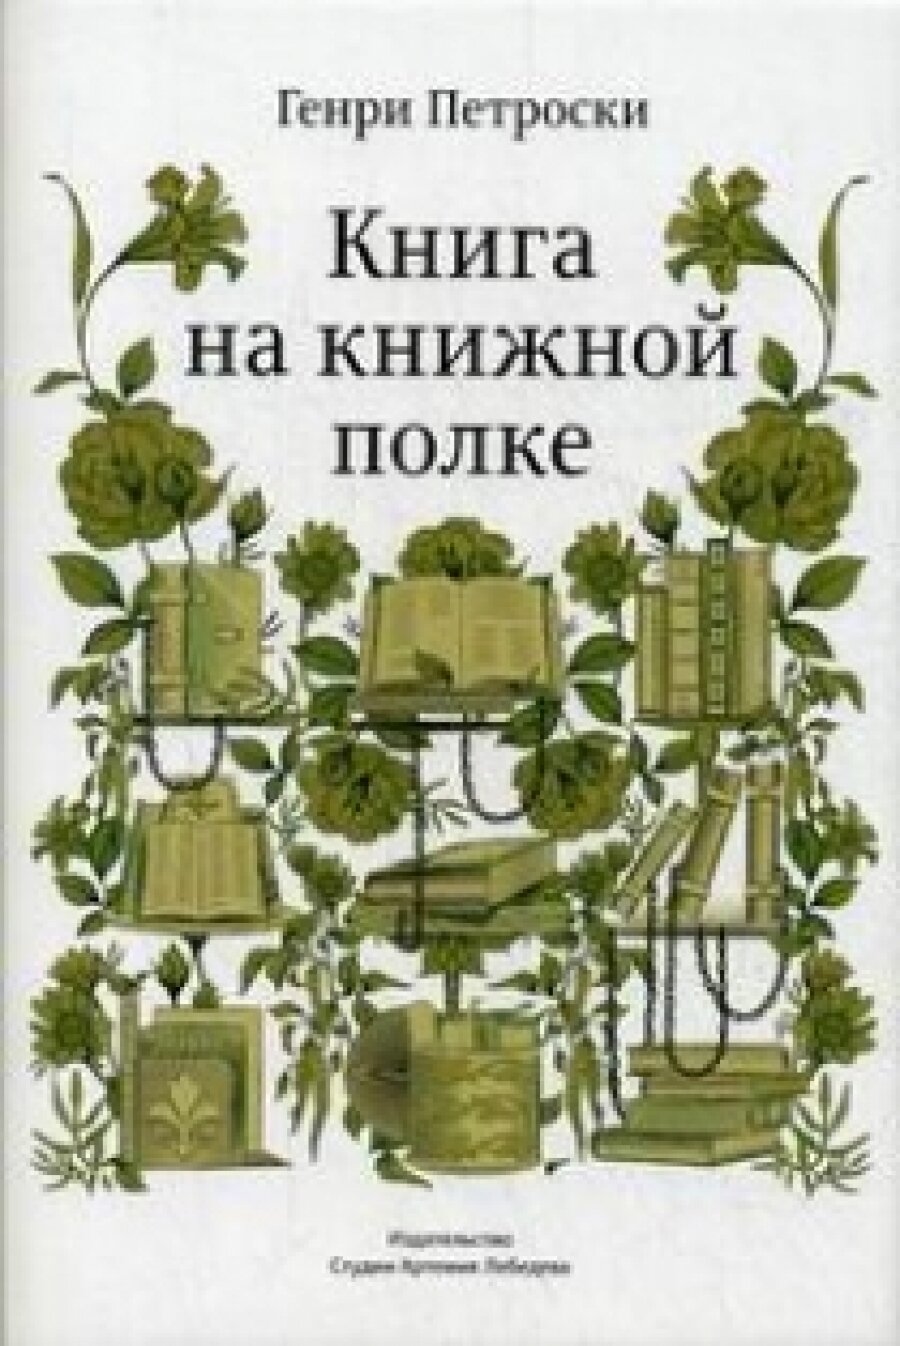 Книга на книжной полке (Петроски Г.) - фото №6